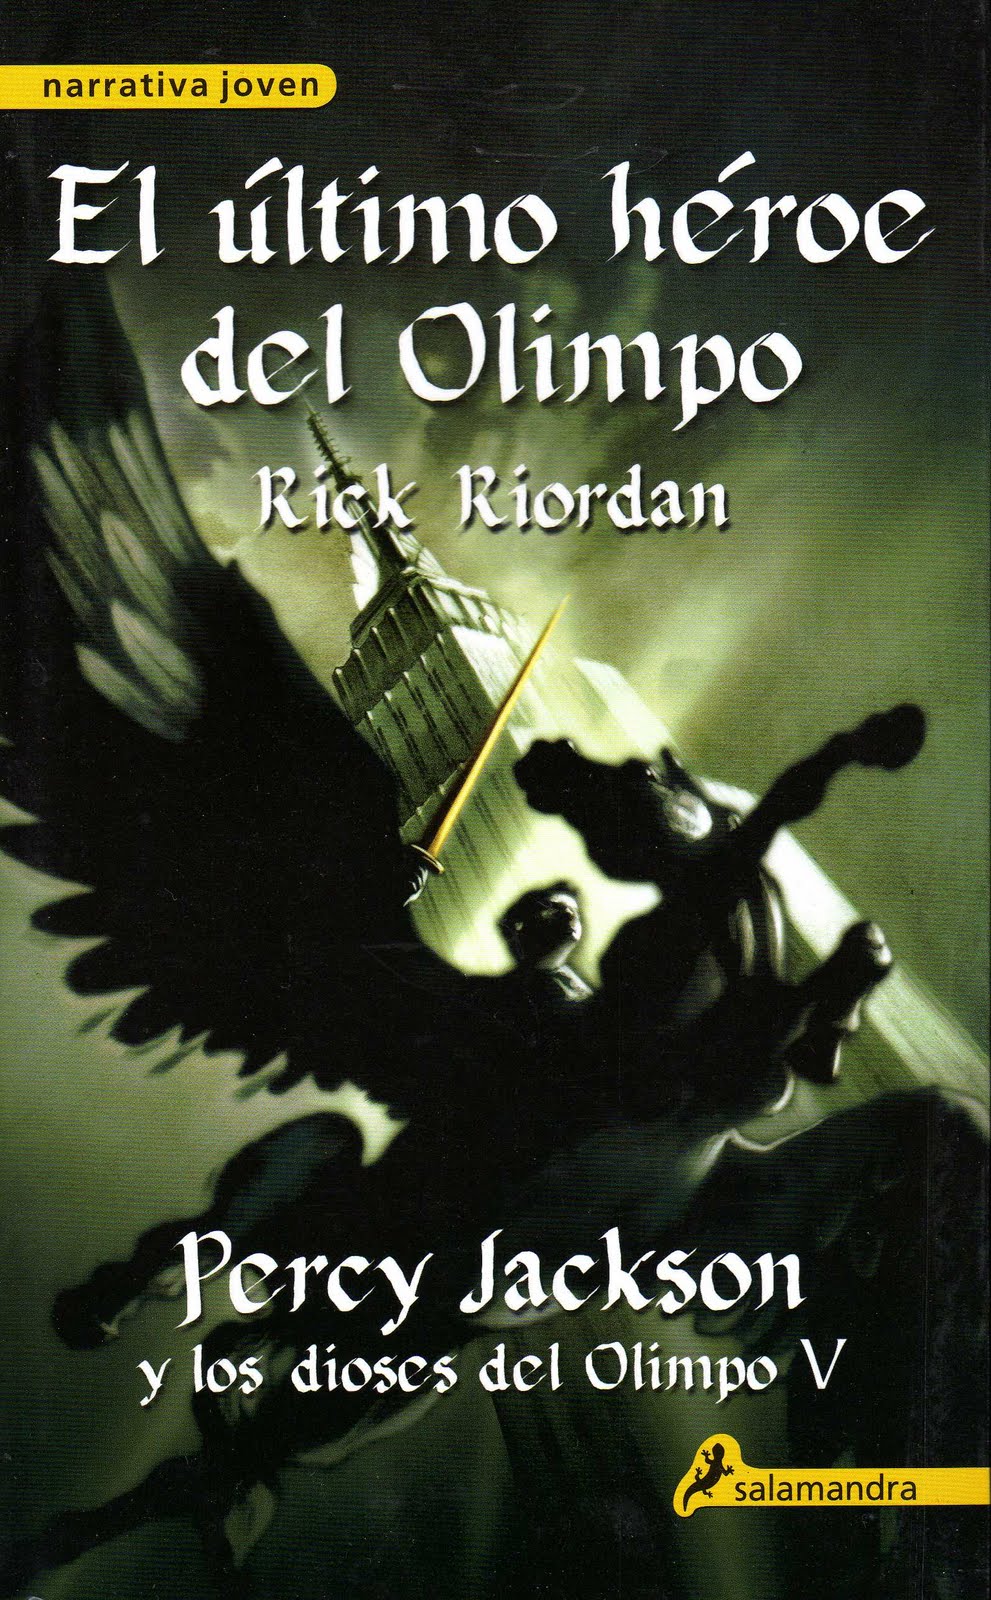 Percy Jackson: El ladrón del rayo (Reseña) ~ Lector promedio.